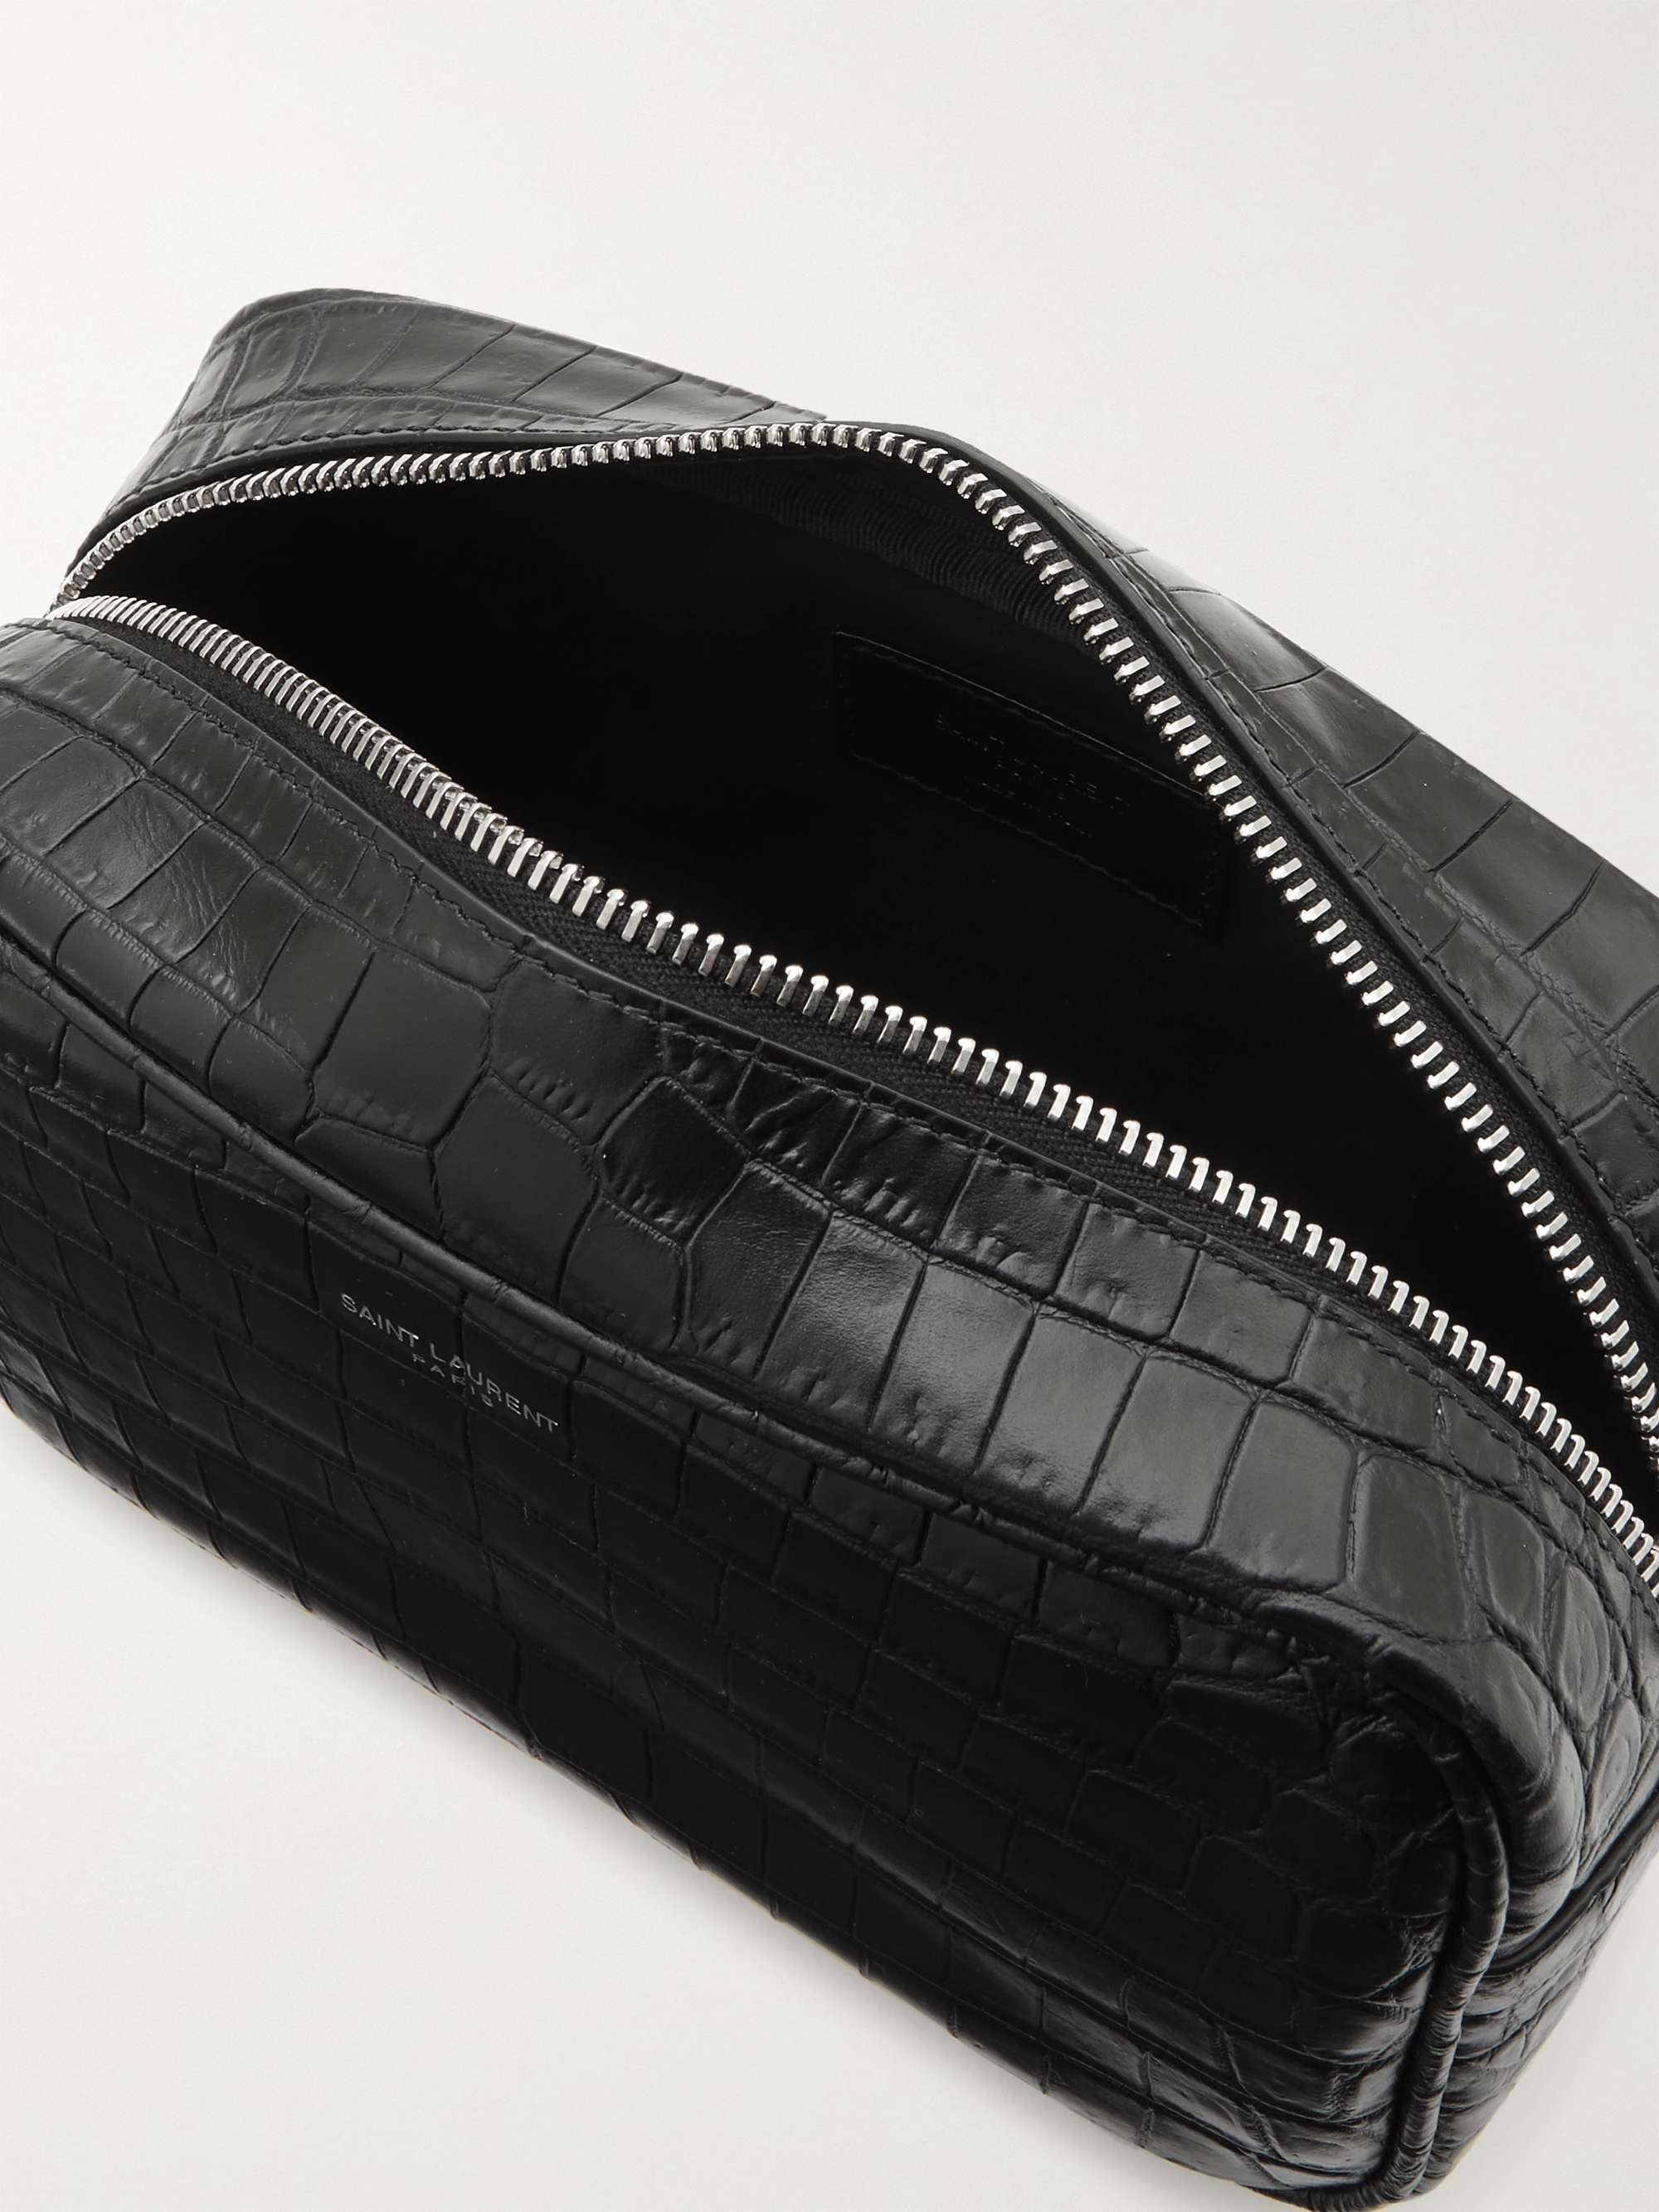 SAINT LAURENT Croc-Effect Leather Wash Bag